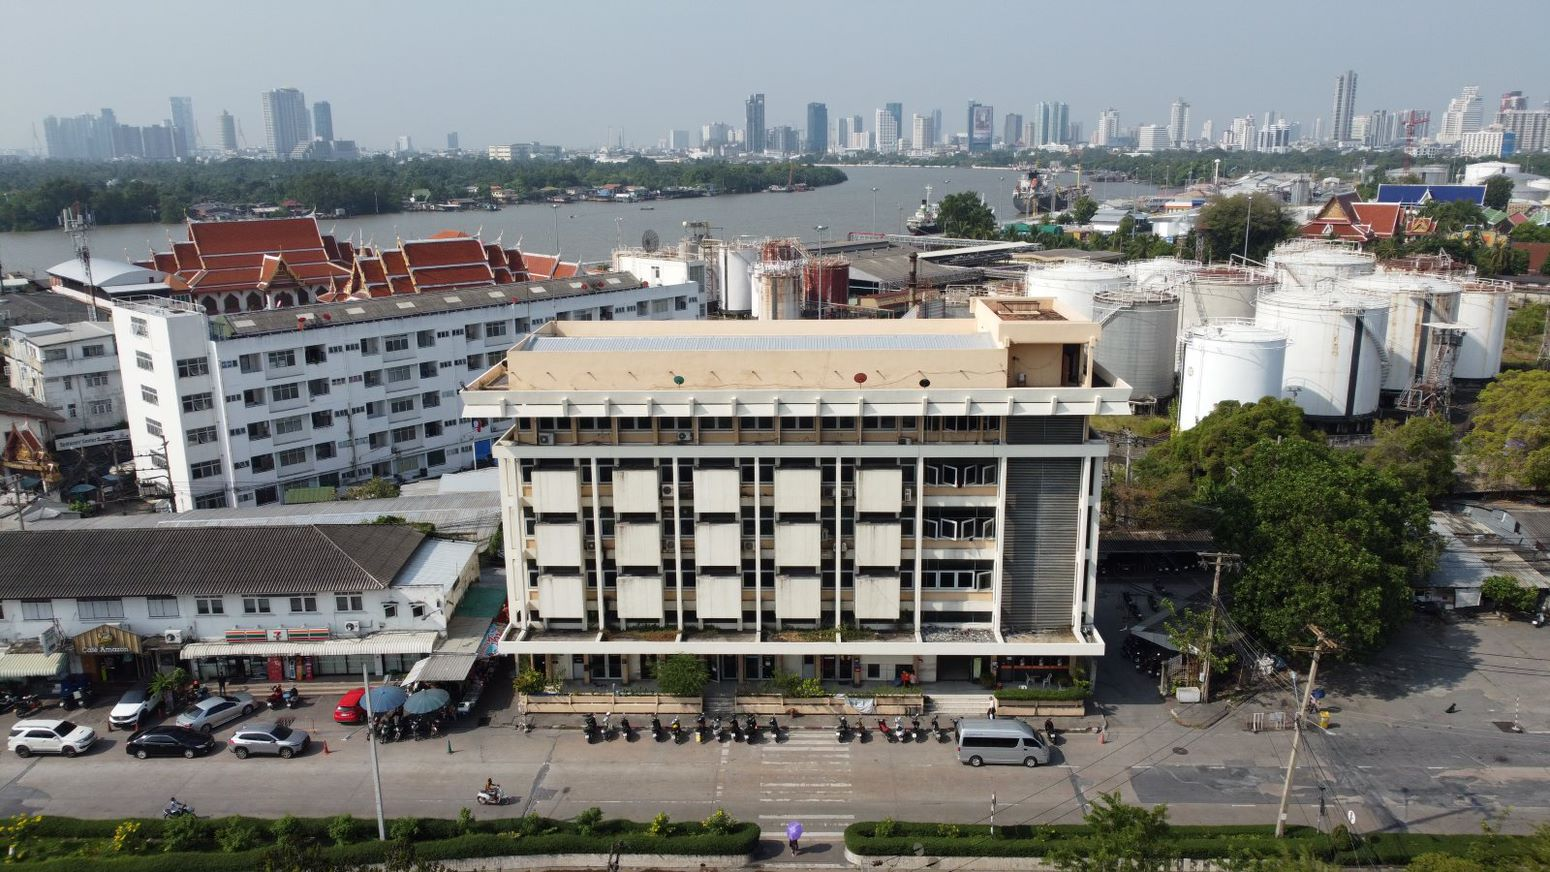 การท่าเรือแห่งประเทศไทย เปิดให้เช่าที่ดินและอาคารสำนักงาน บนพื้นที่ใจกลางเมือง